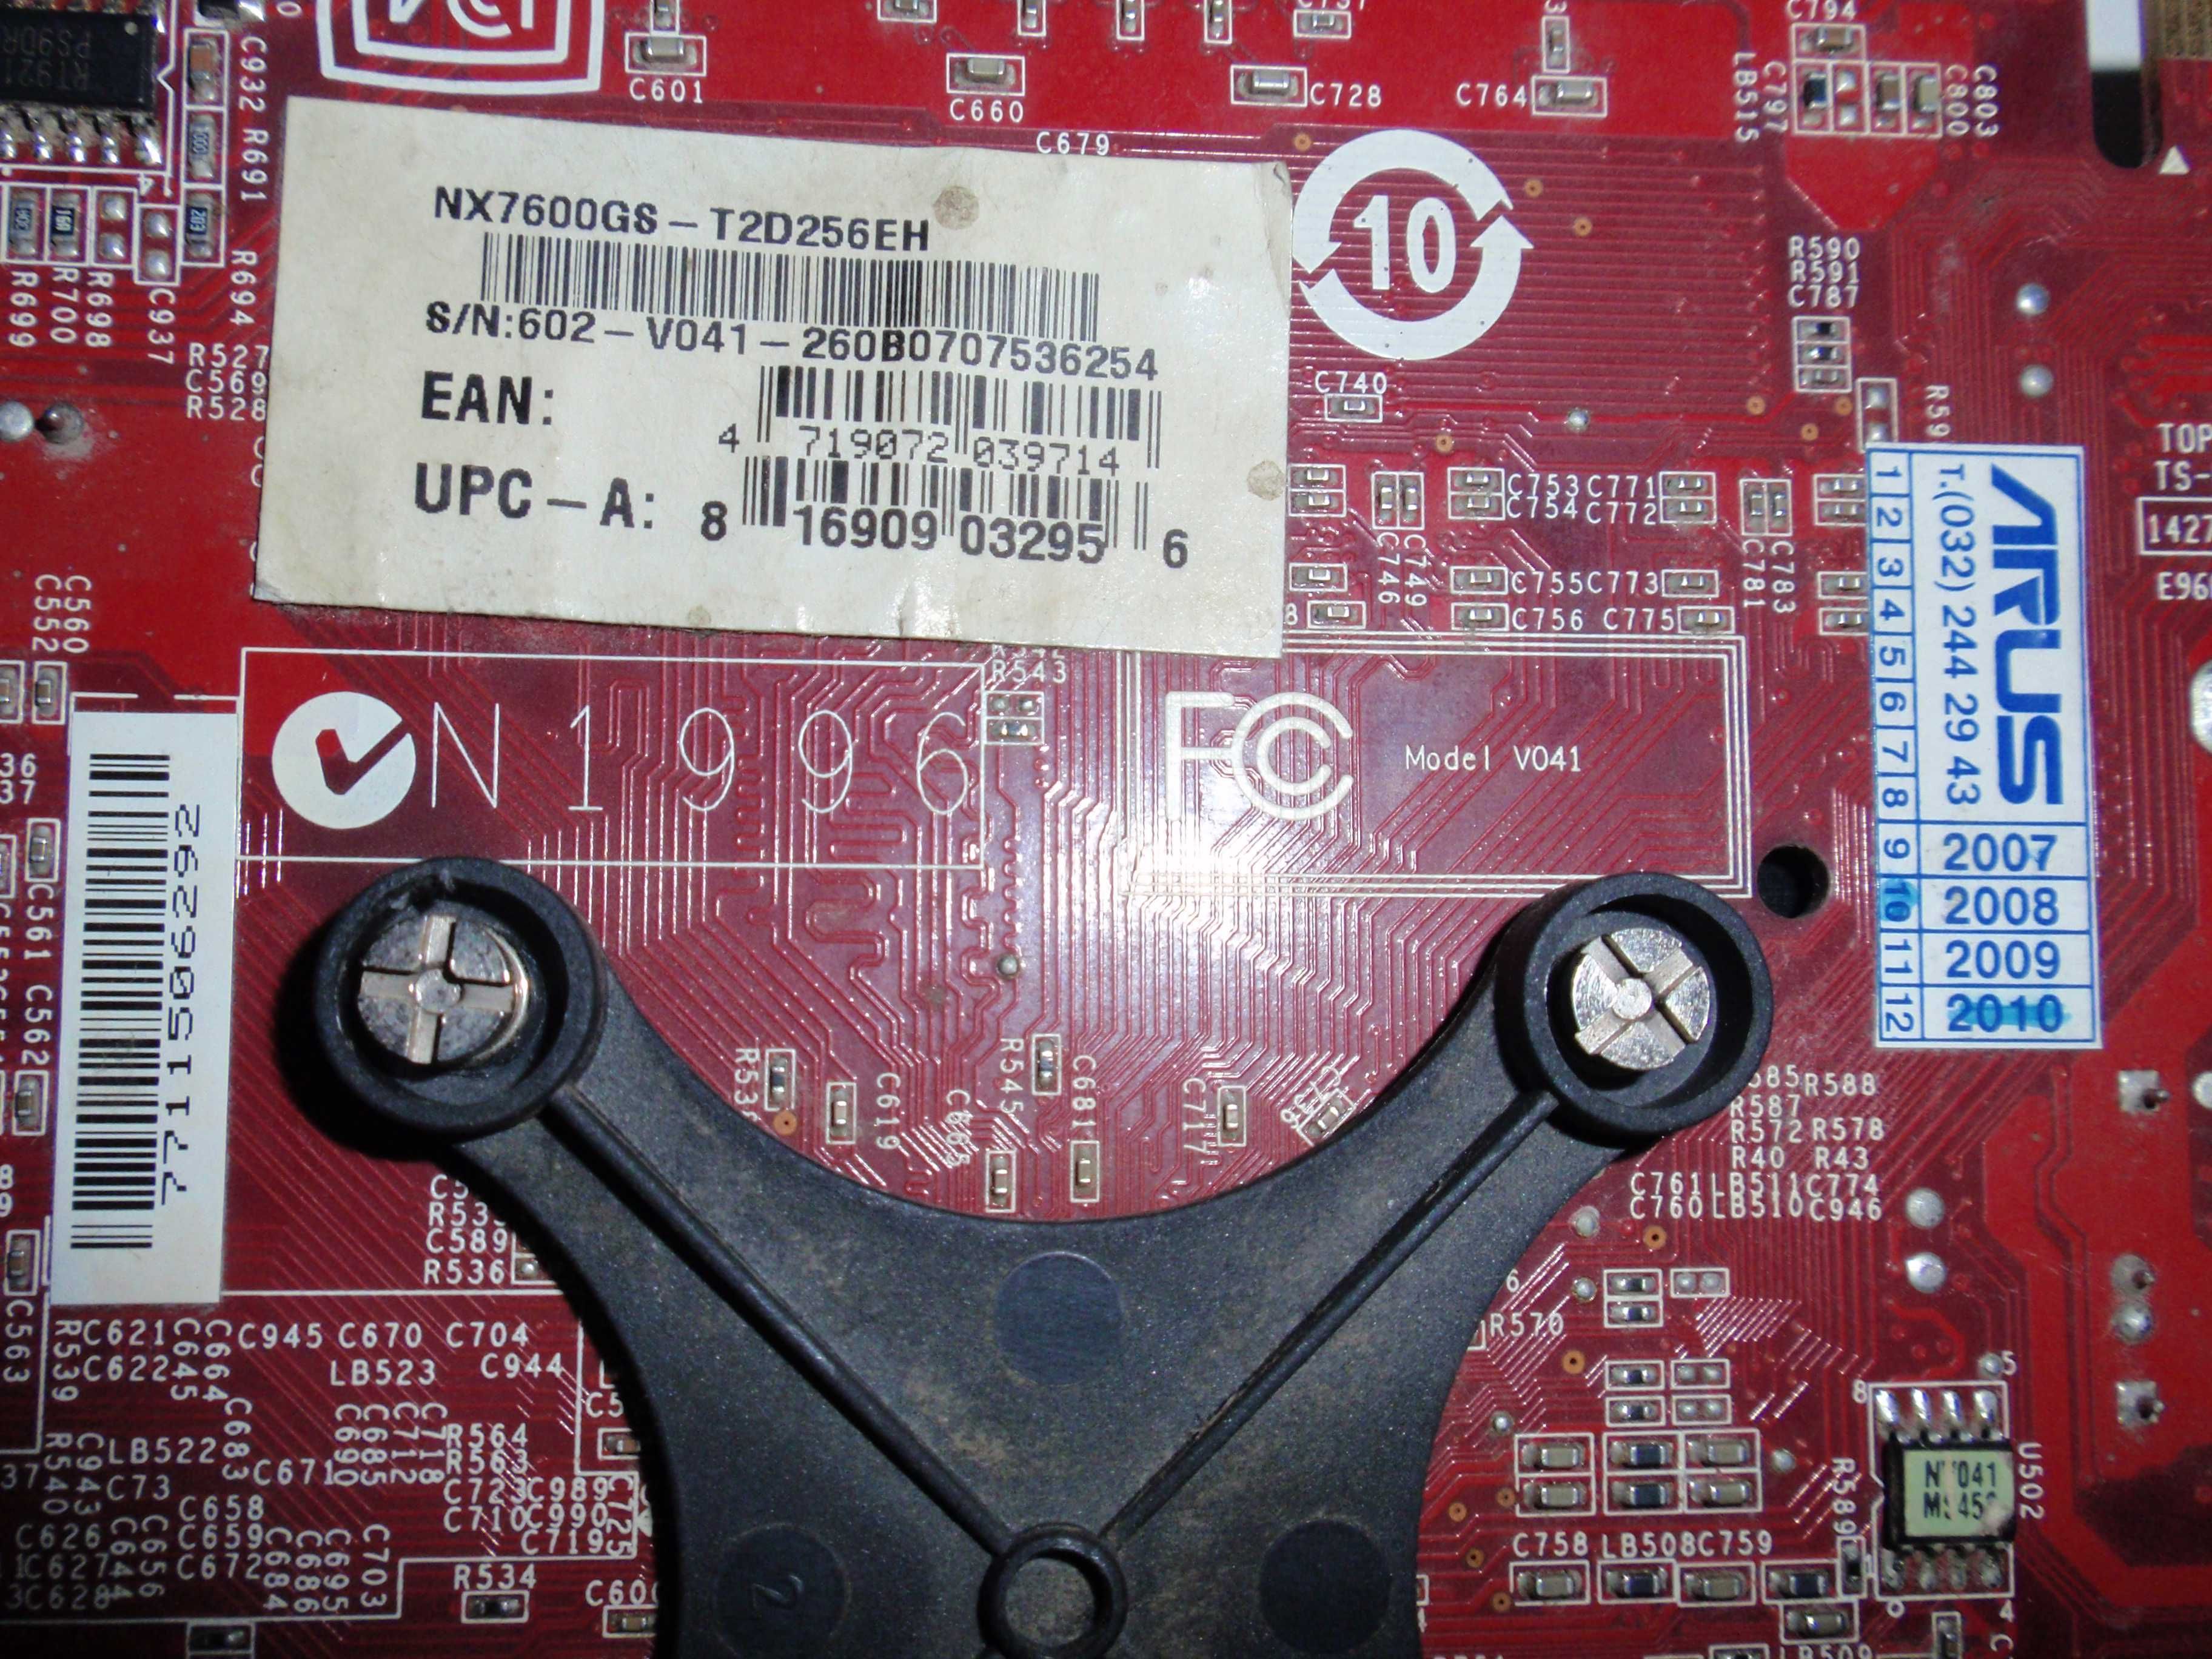 Відеокарта NVIDIA GeForce 7600 GS 256 Mb DDR2 128b (неробоча)